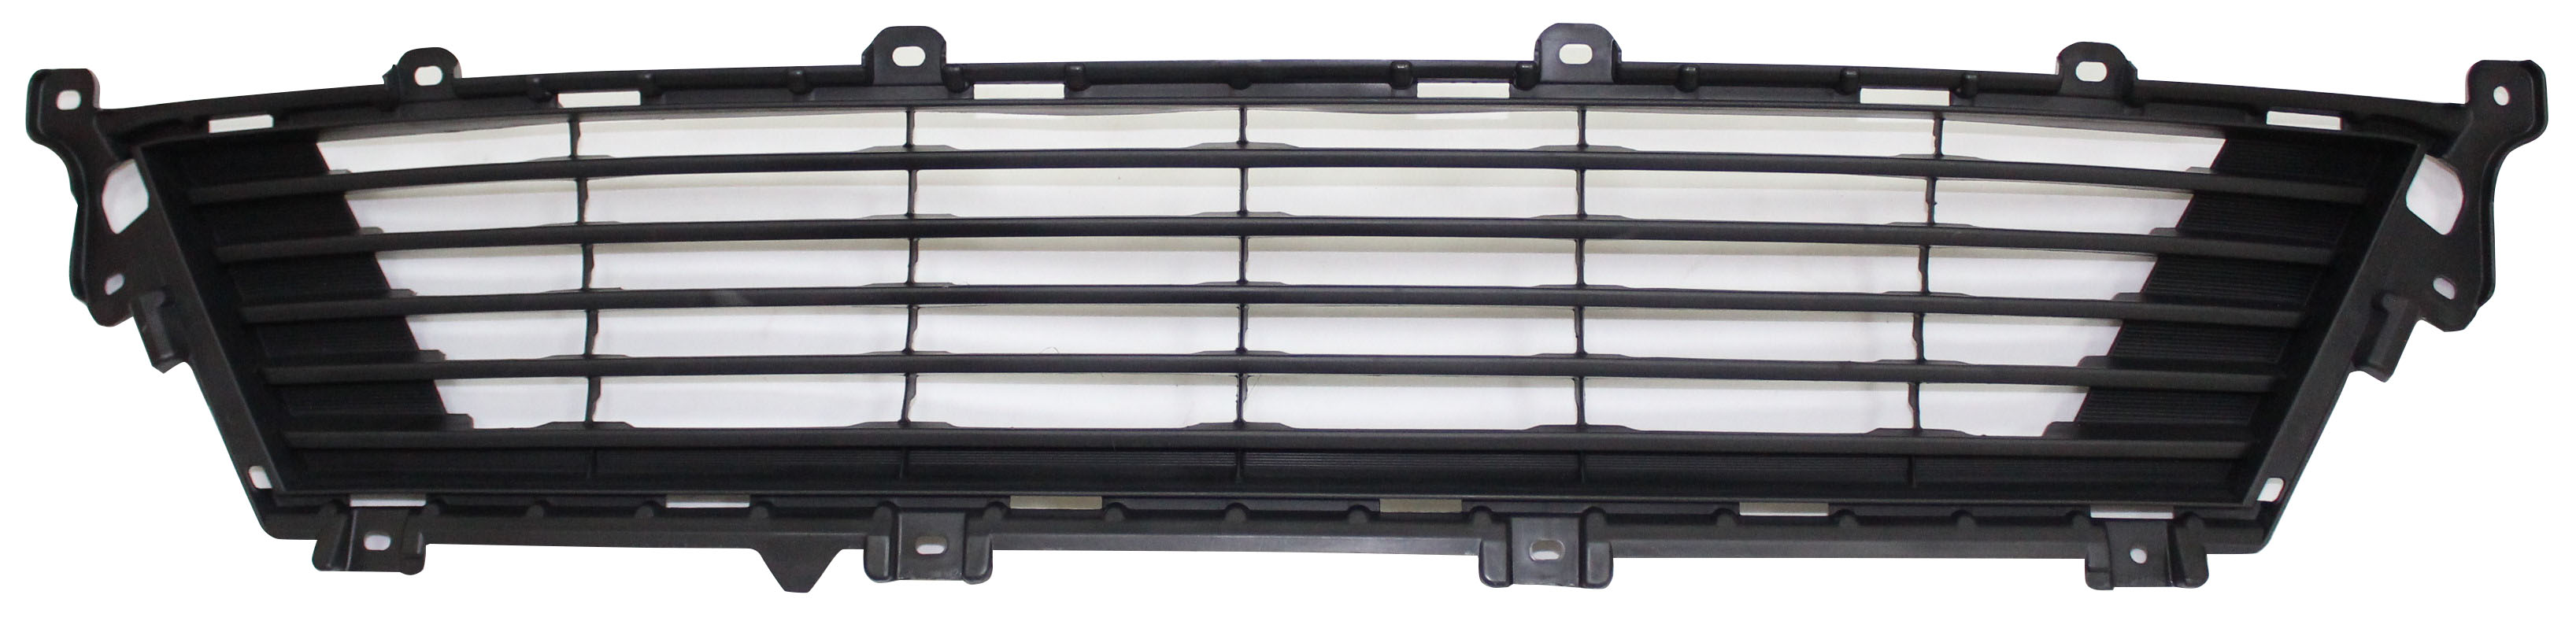 Aftermarket GRILLES for LEXUS - ES300H, ES300h,13-15,Front bumper grille